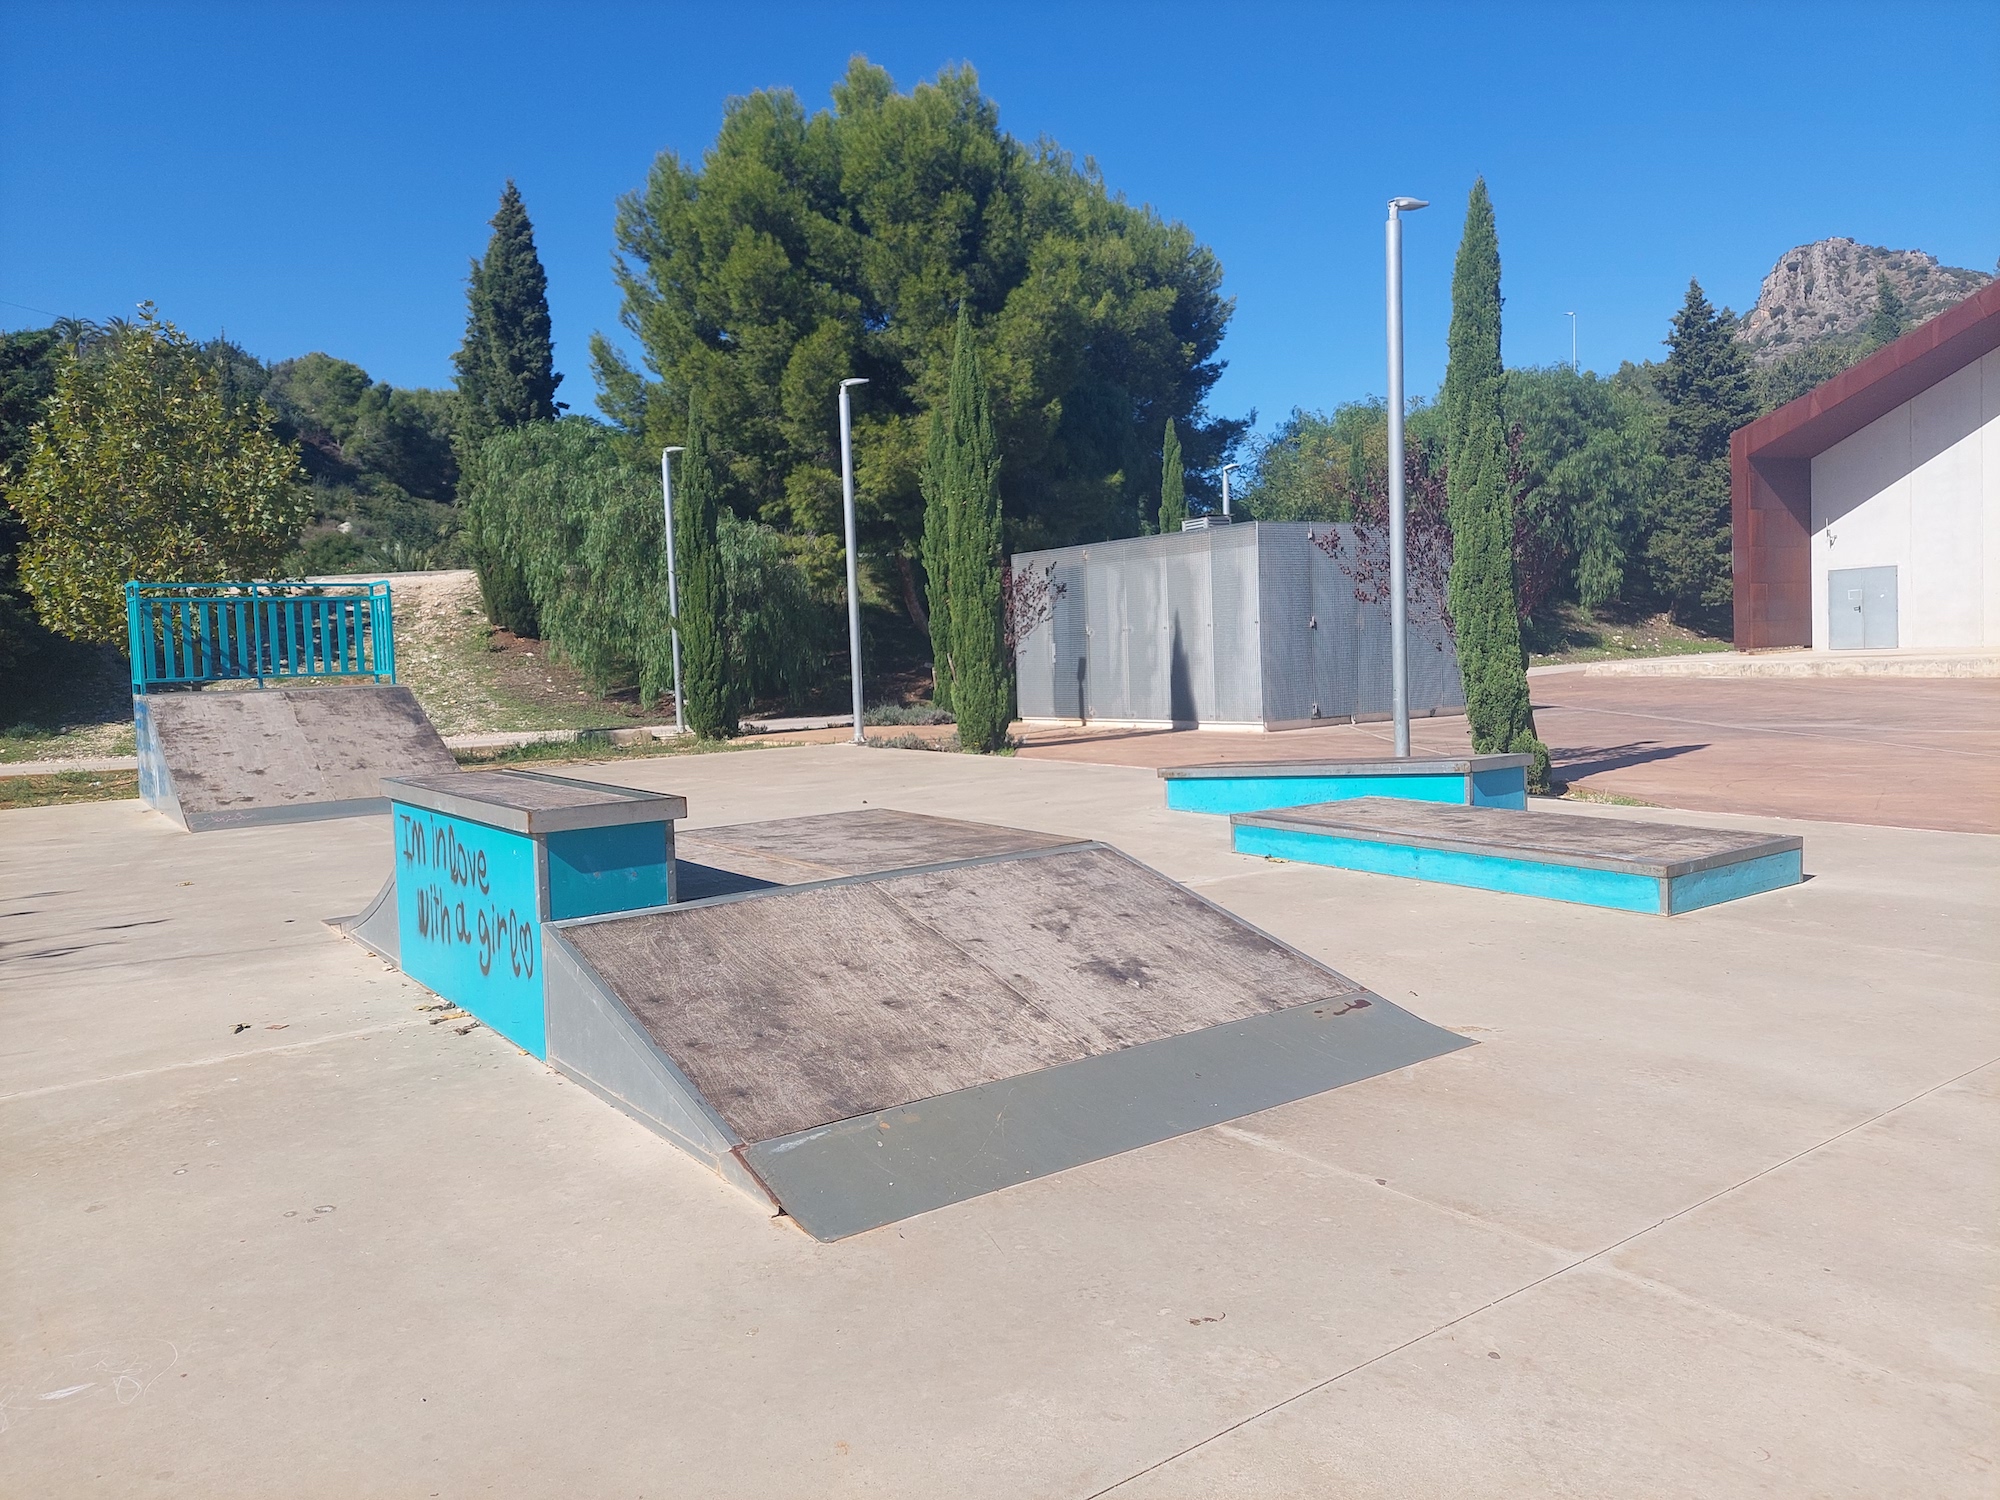 Marroquineria skatepark